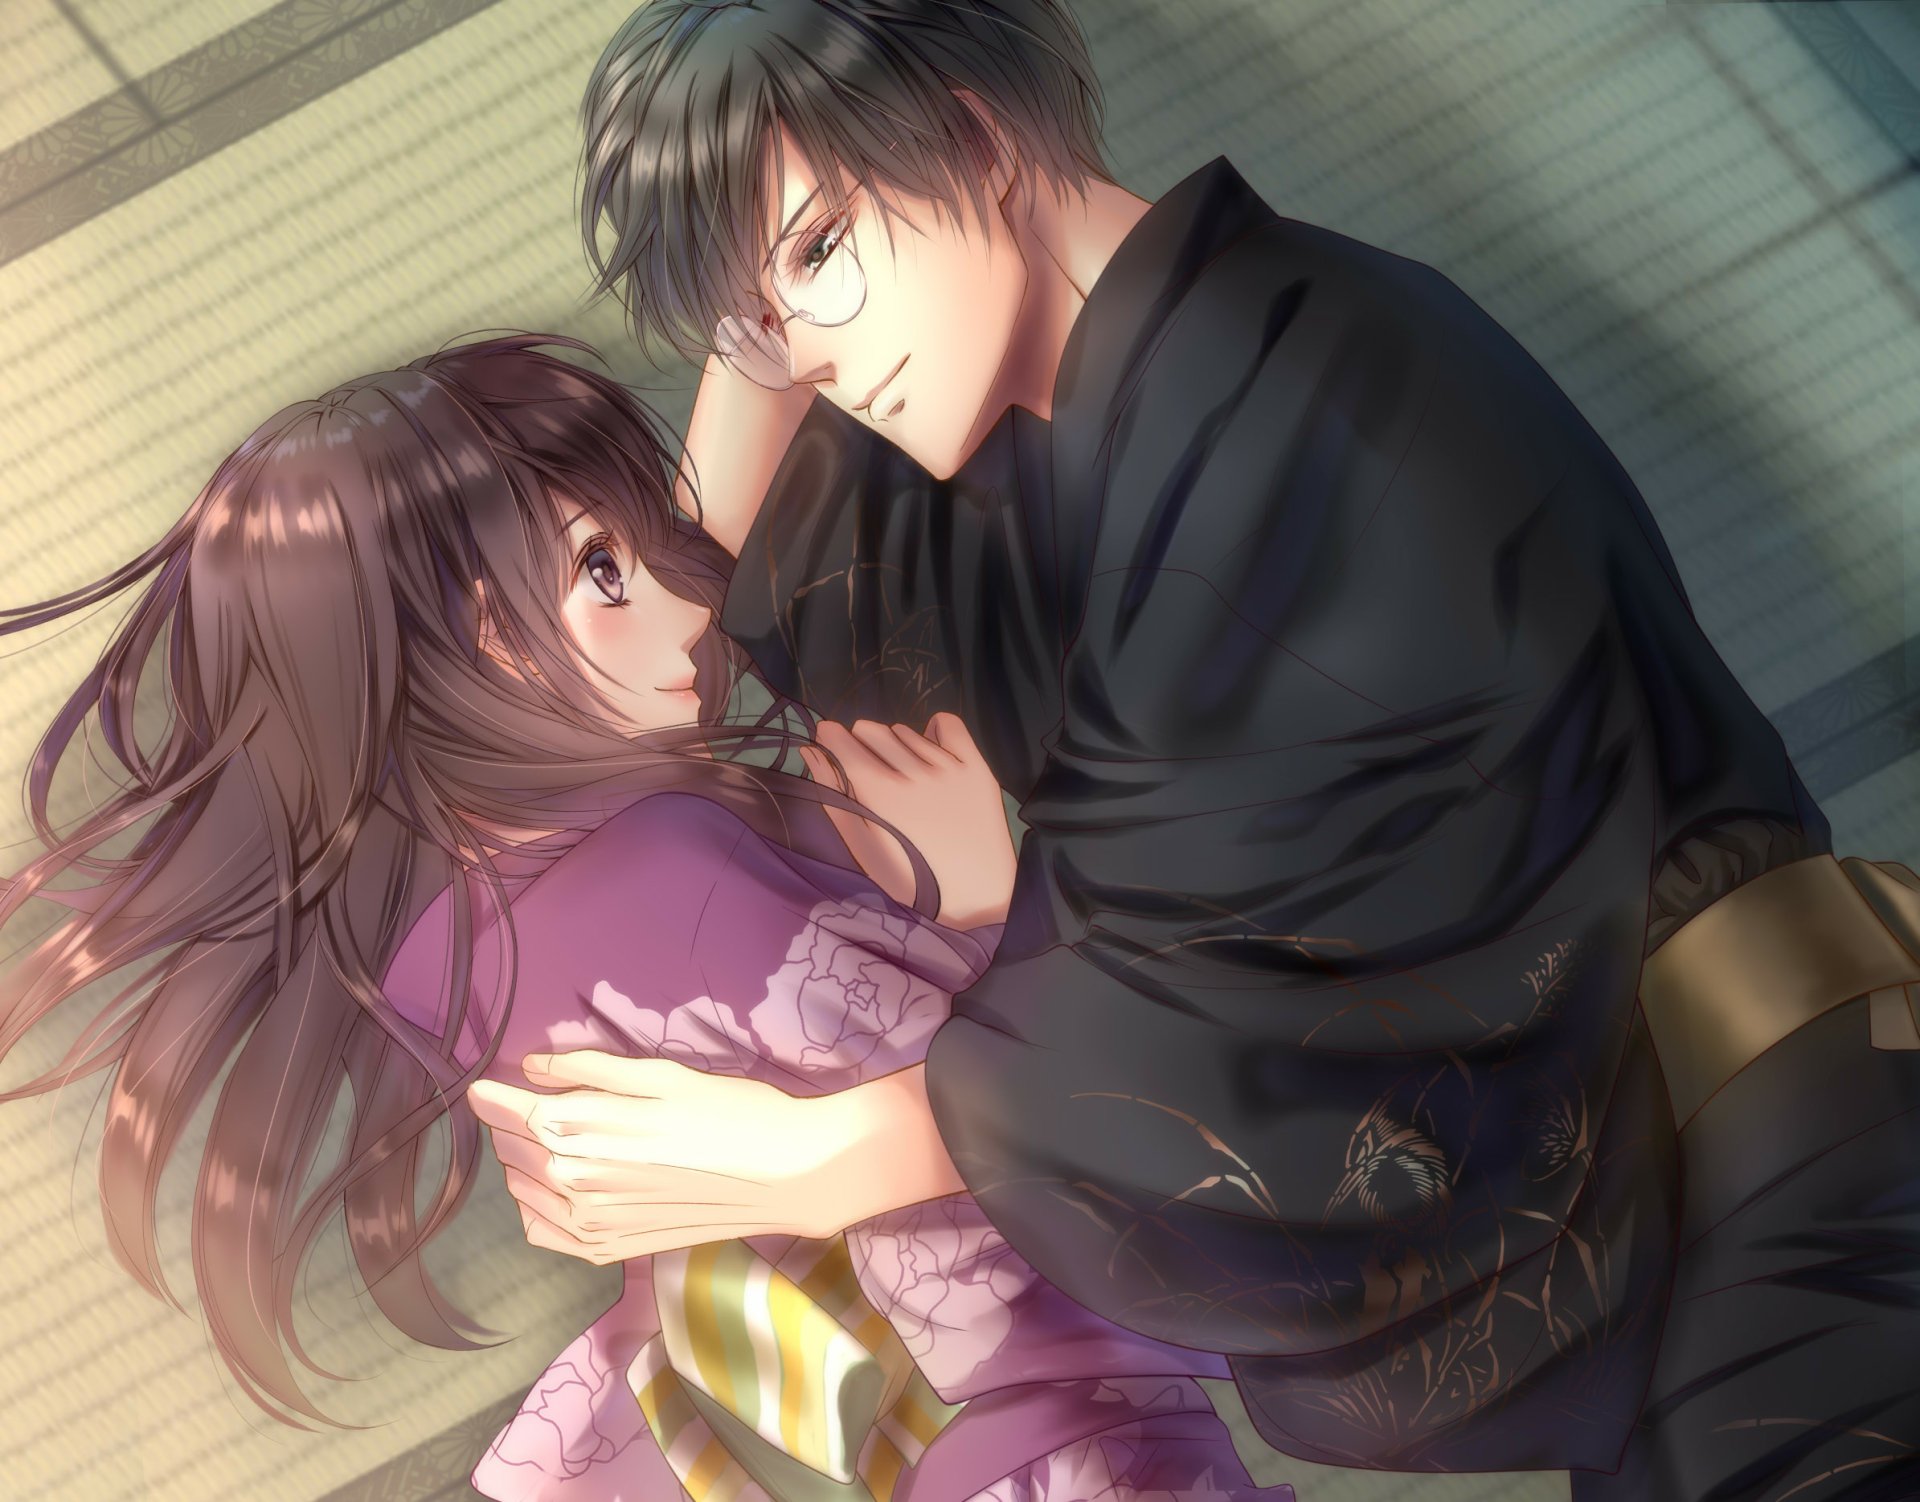 Sweet Anime Couple Hug GIF  GIFDBcom